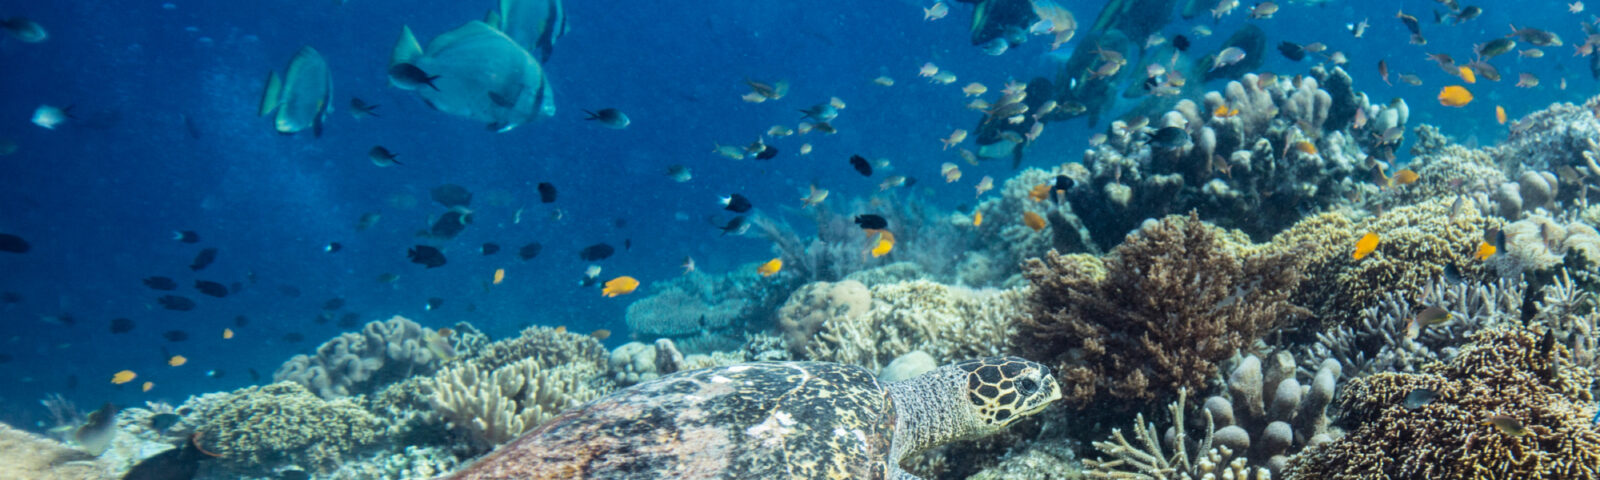 En havskilpadde (ekte karett) svømmer langs et korallrev fullt av liv